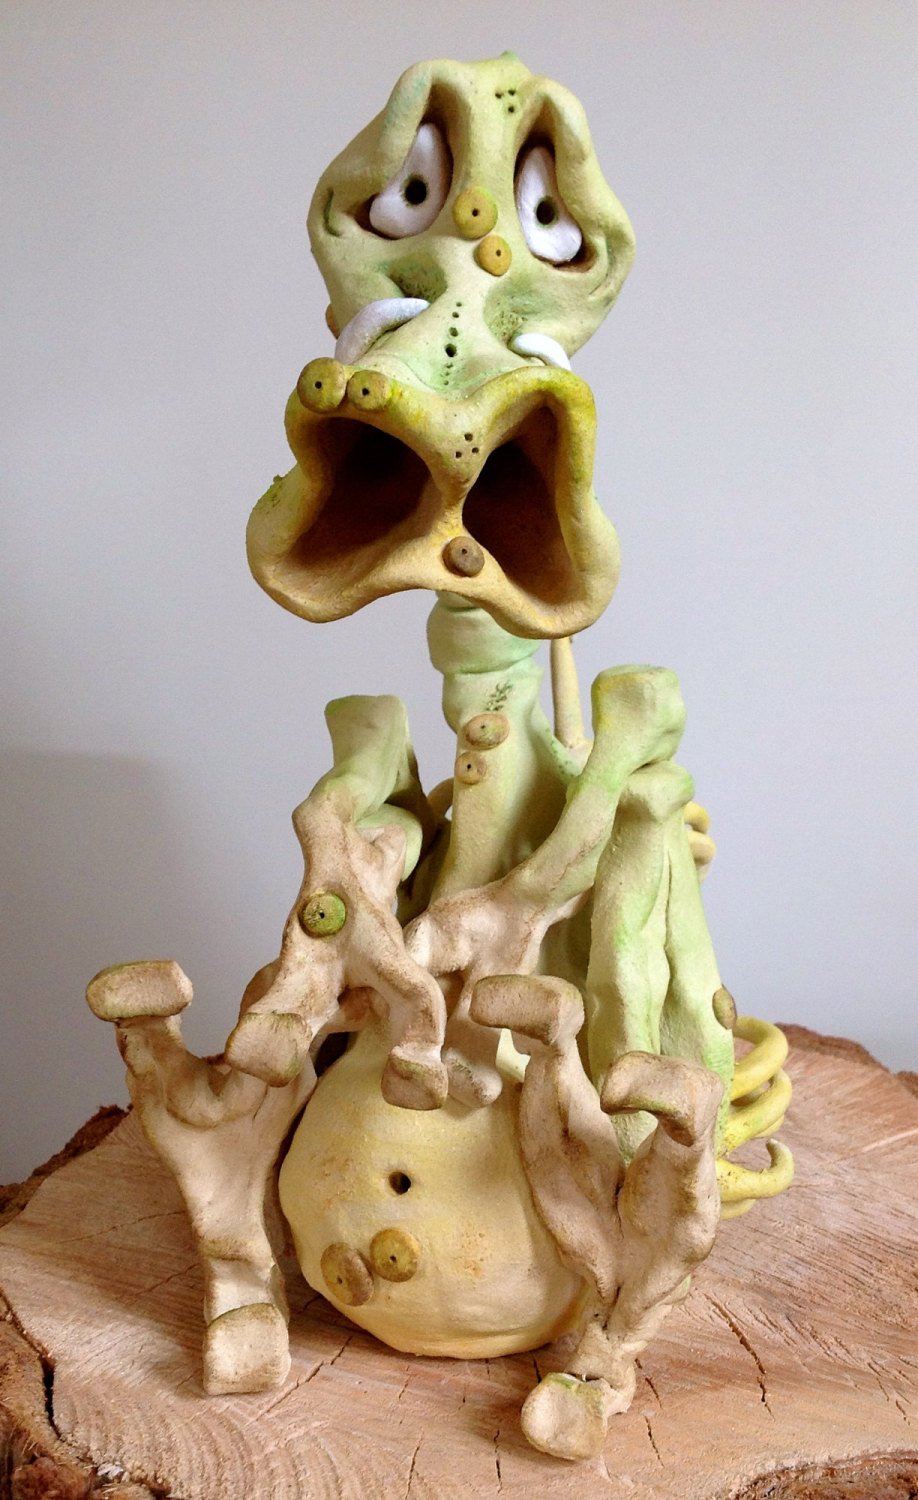 Norman the Snout - Ceramic Sculpture